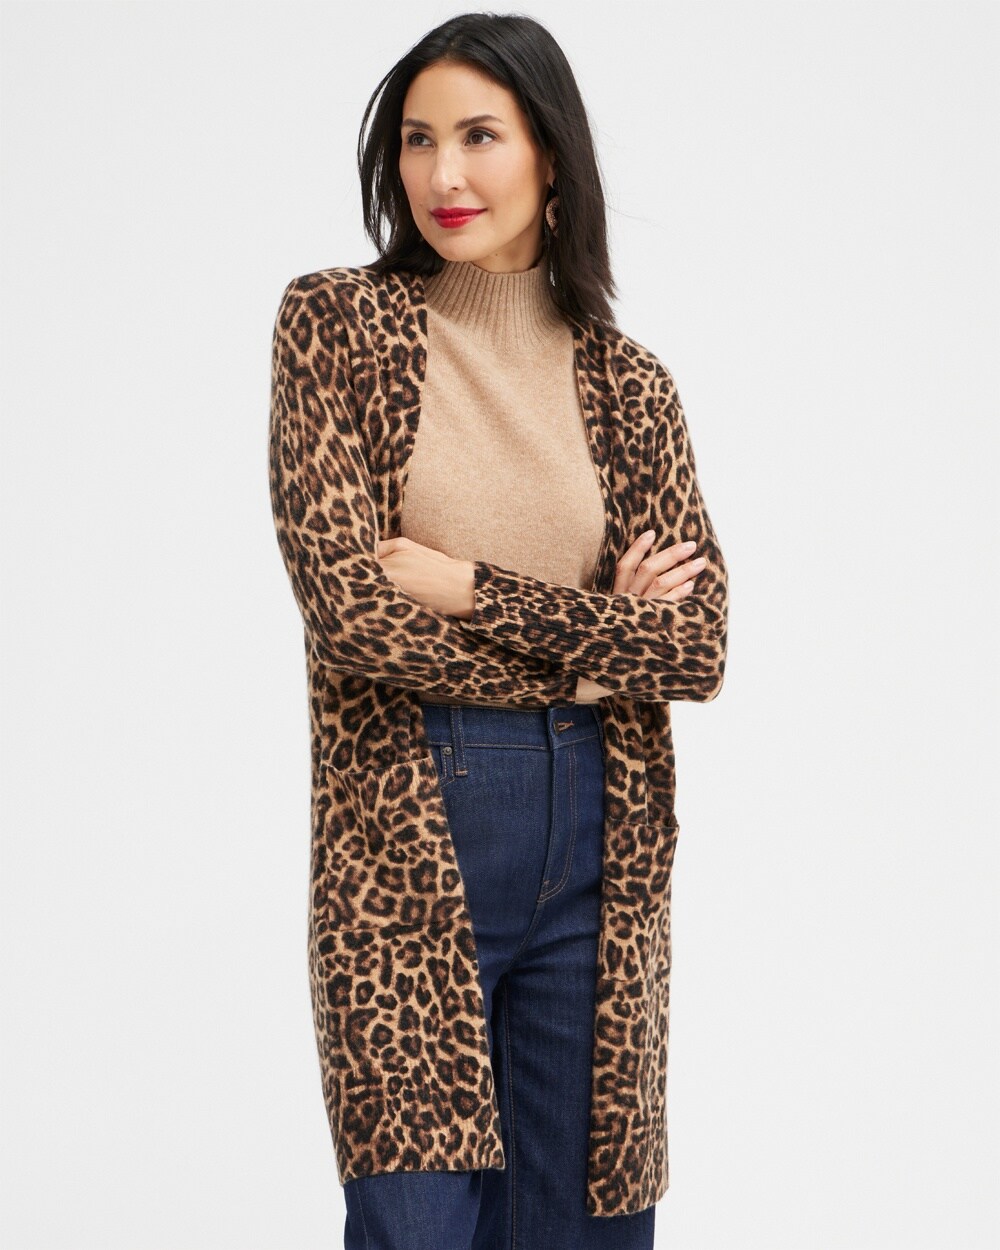 Cashmere Leopard Cardigan Sweater